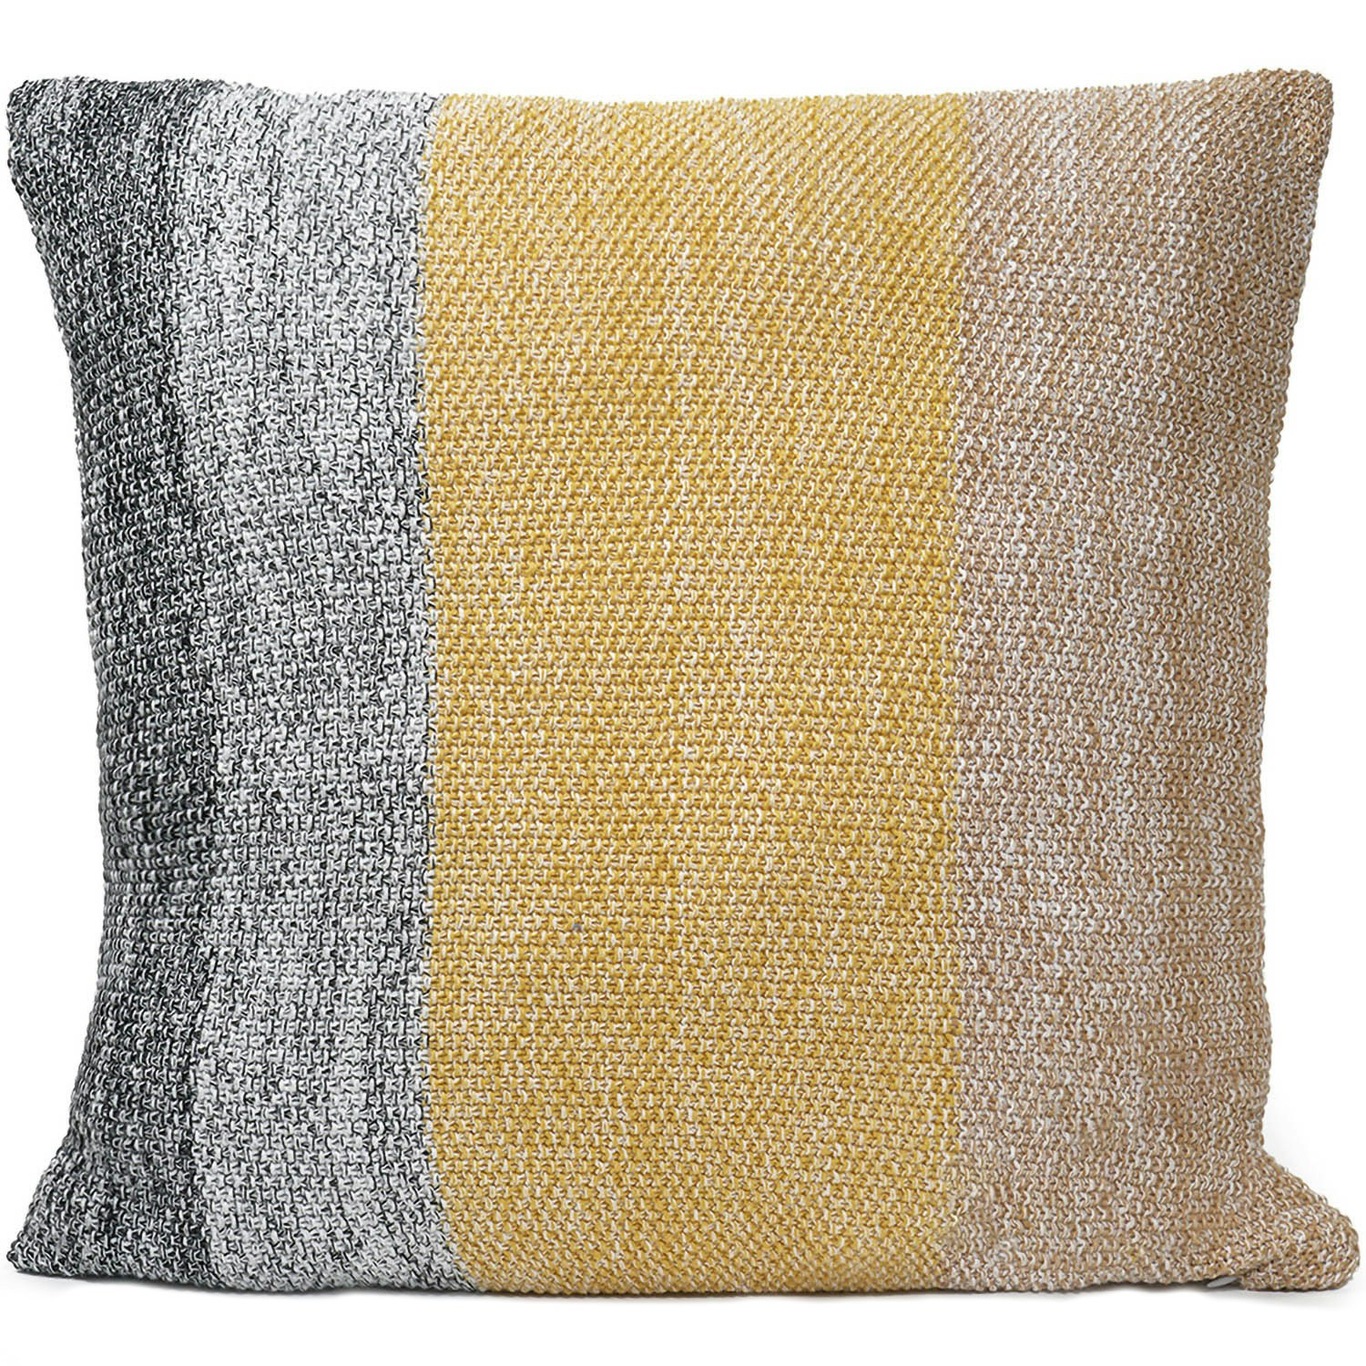 Knitted Stripes Tyynynpäällinen 50x50 cm, Keltainen